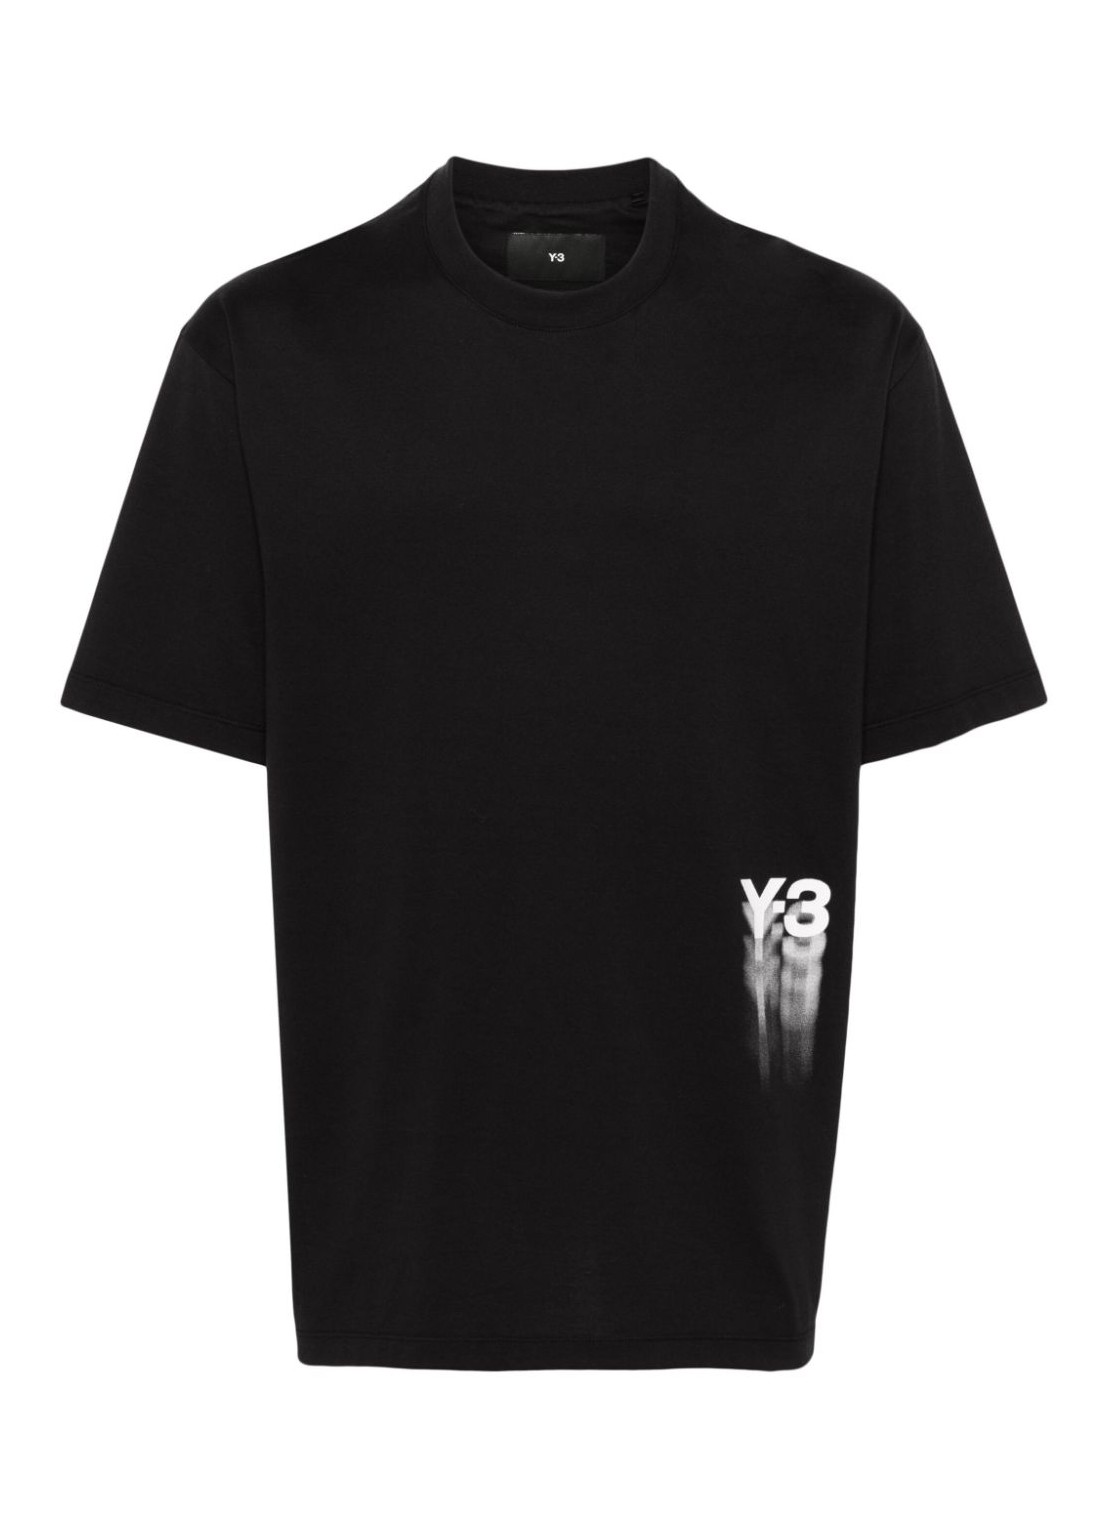 Camiseta y3 t-shirt man gfx ss tee iz3124 black talla negro
 